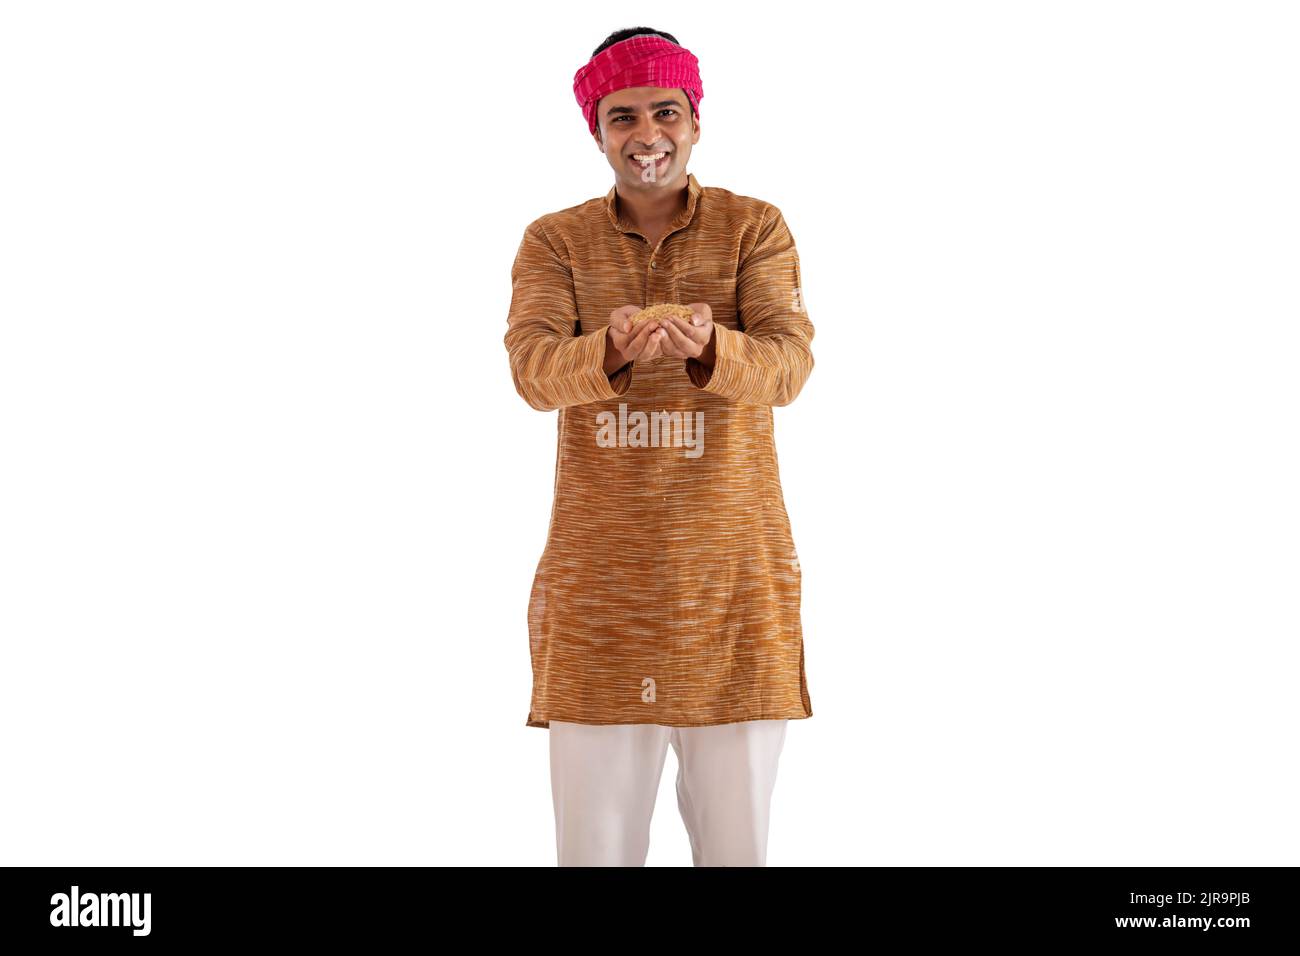 Portrait de Bihar homme tenant paddy dans sa main contre fond blanc Banque D'Images